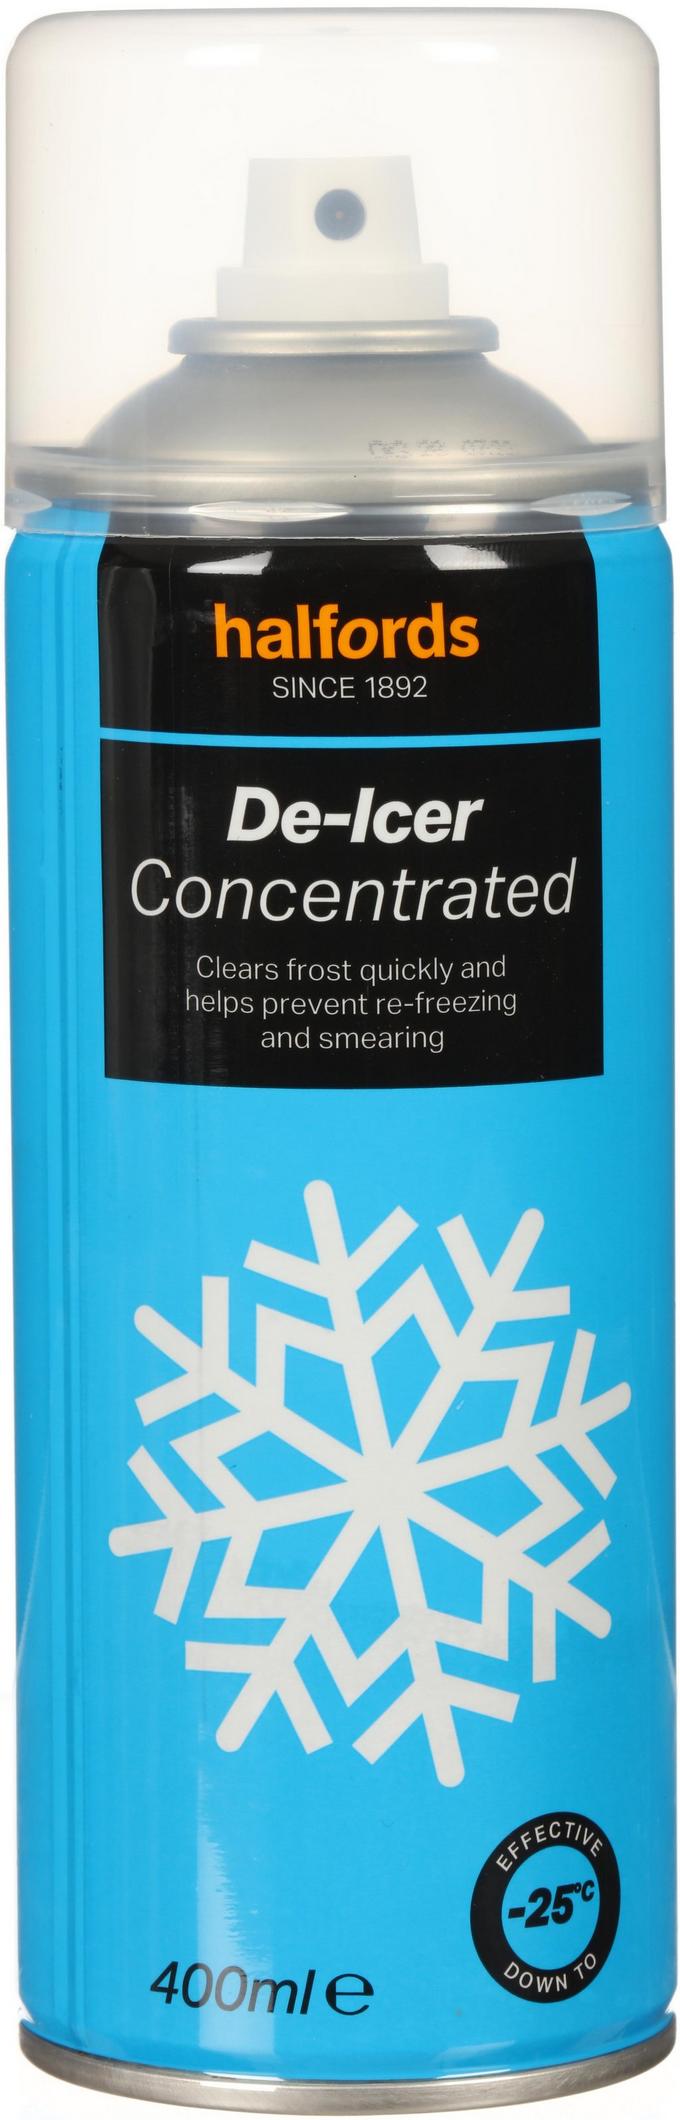 De-Icer Spray in Stock 